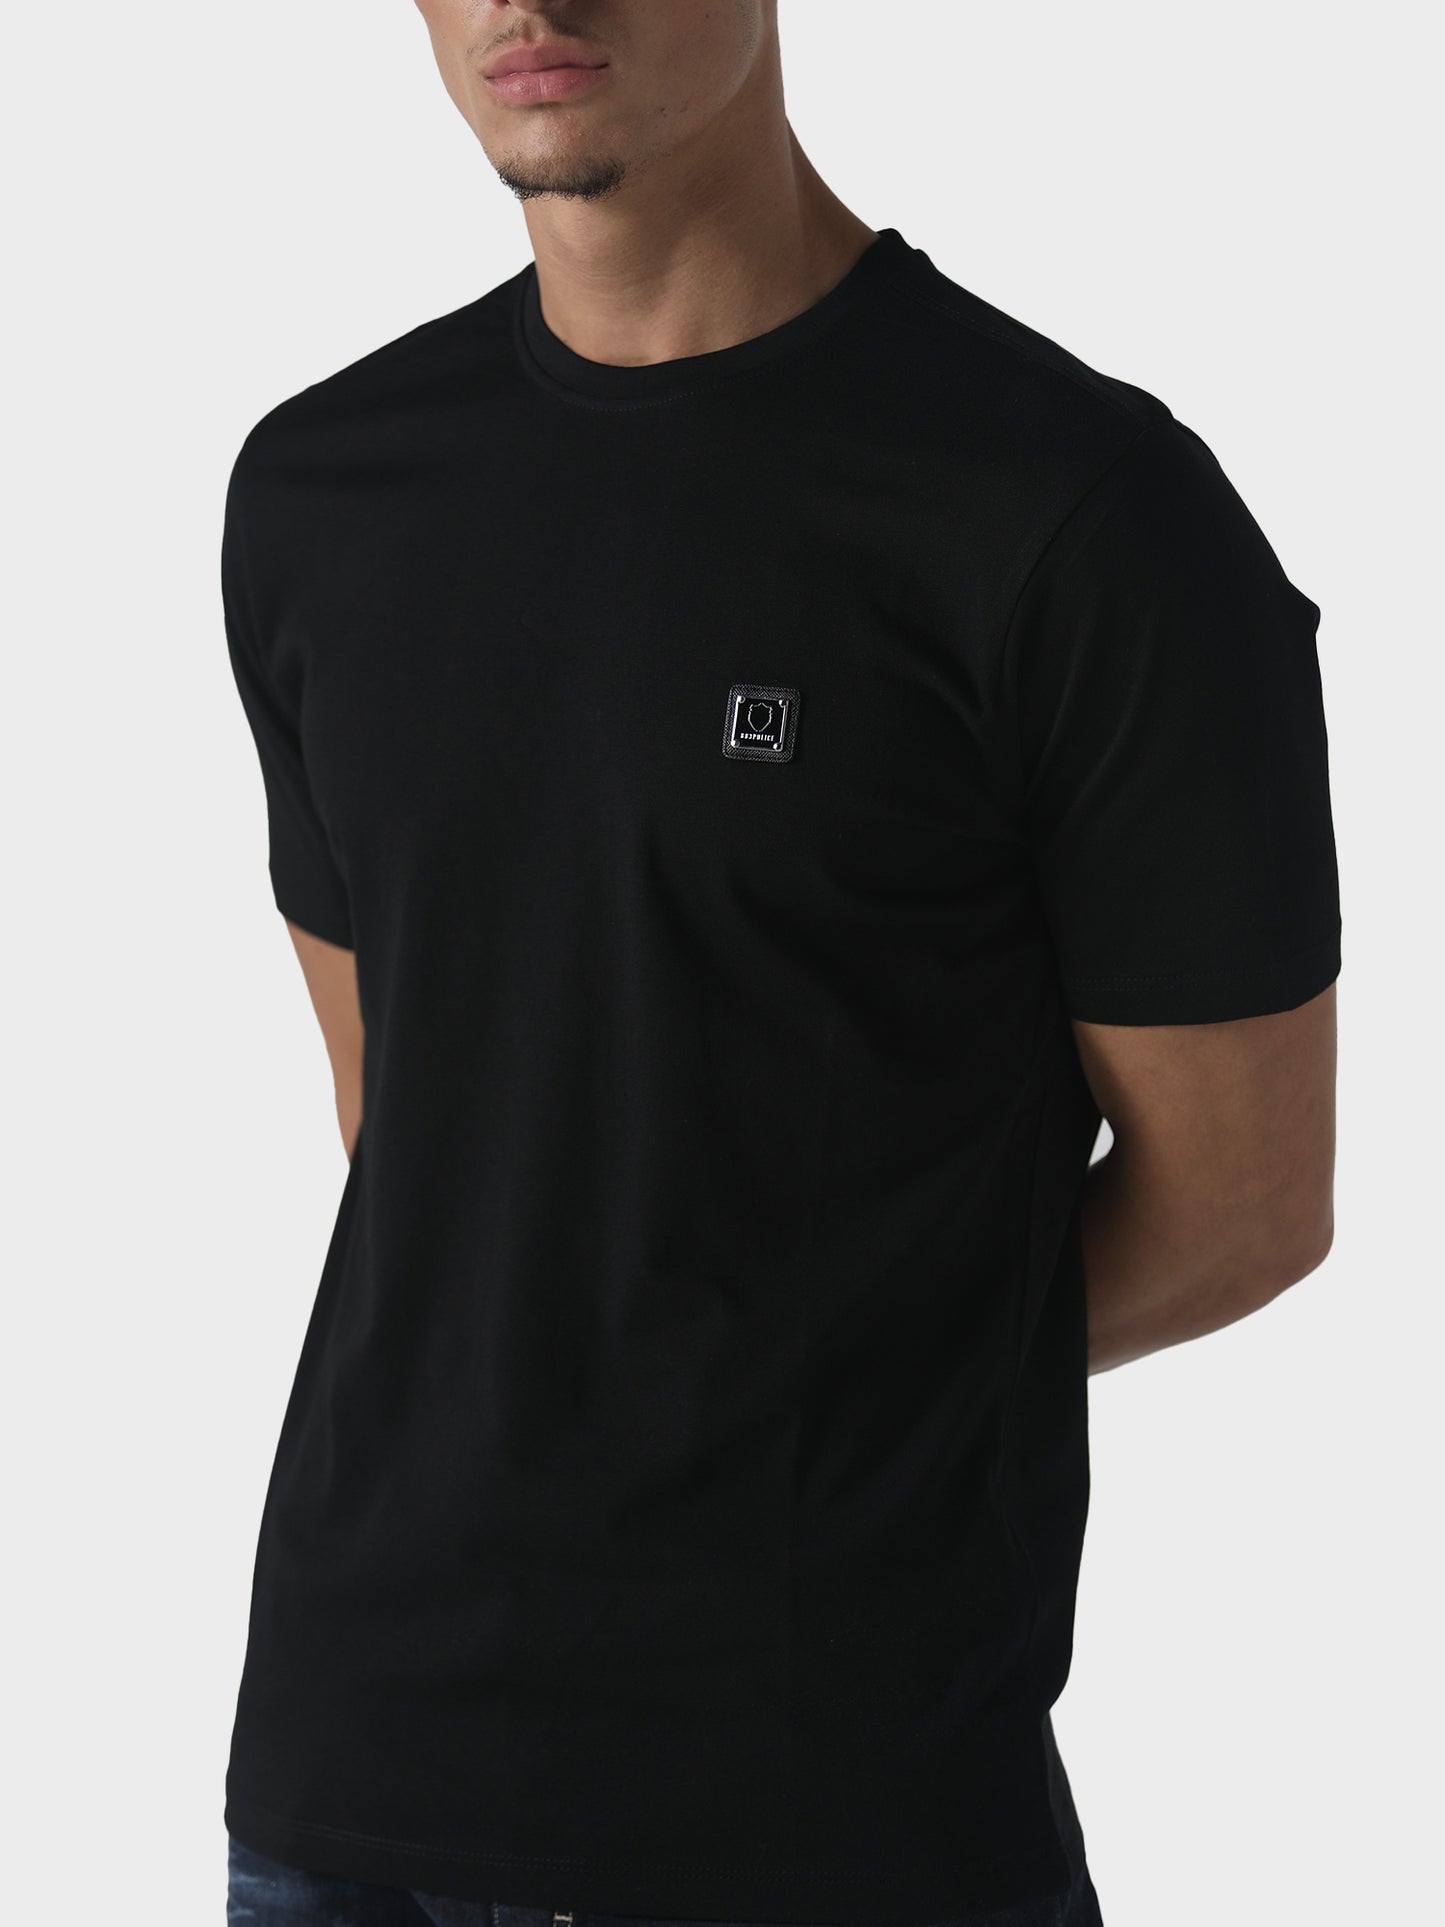 Reyser Black T-Shirt